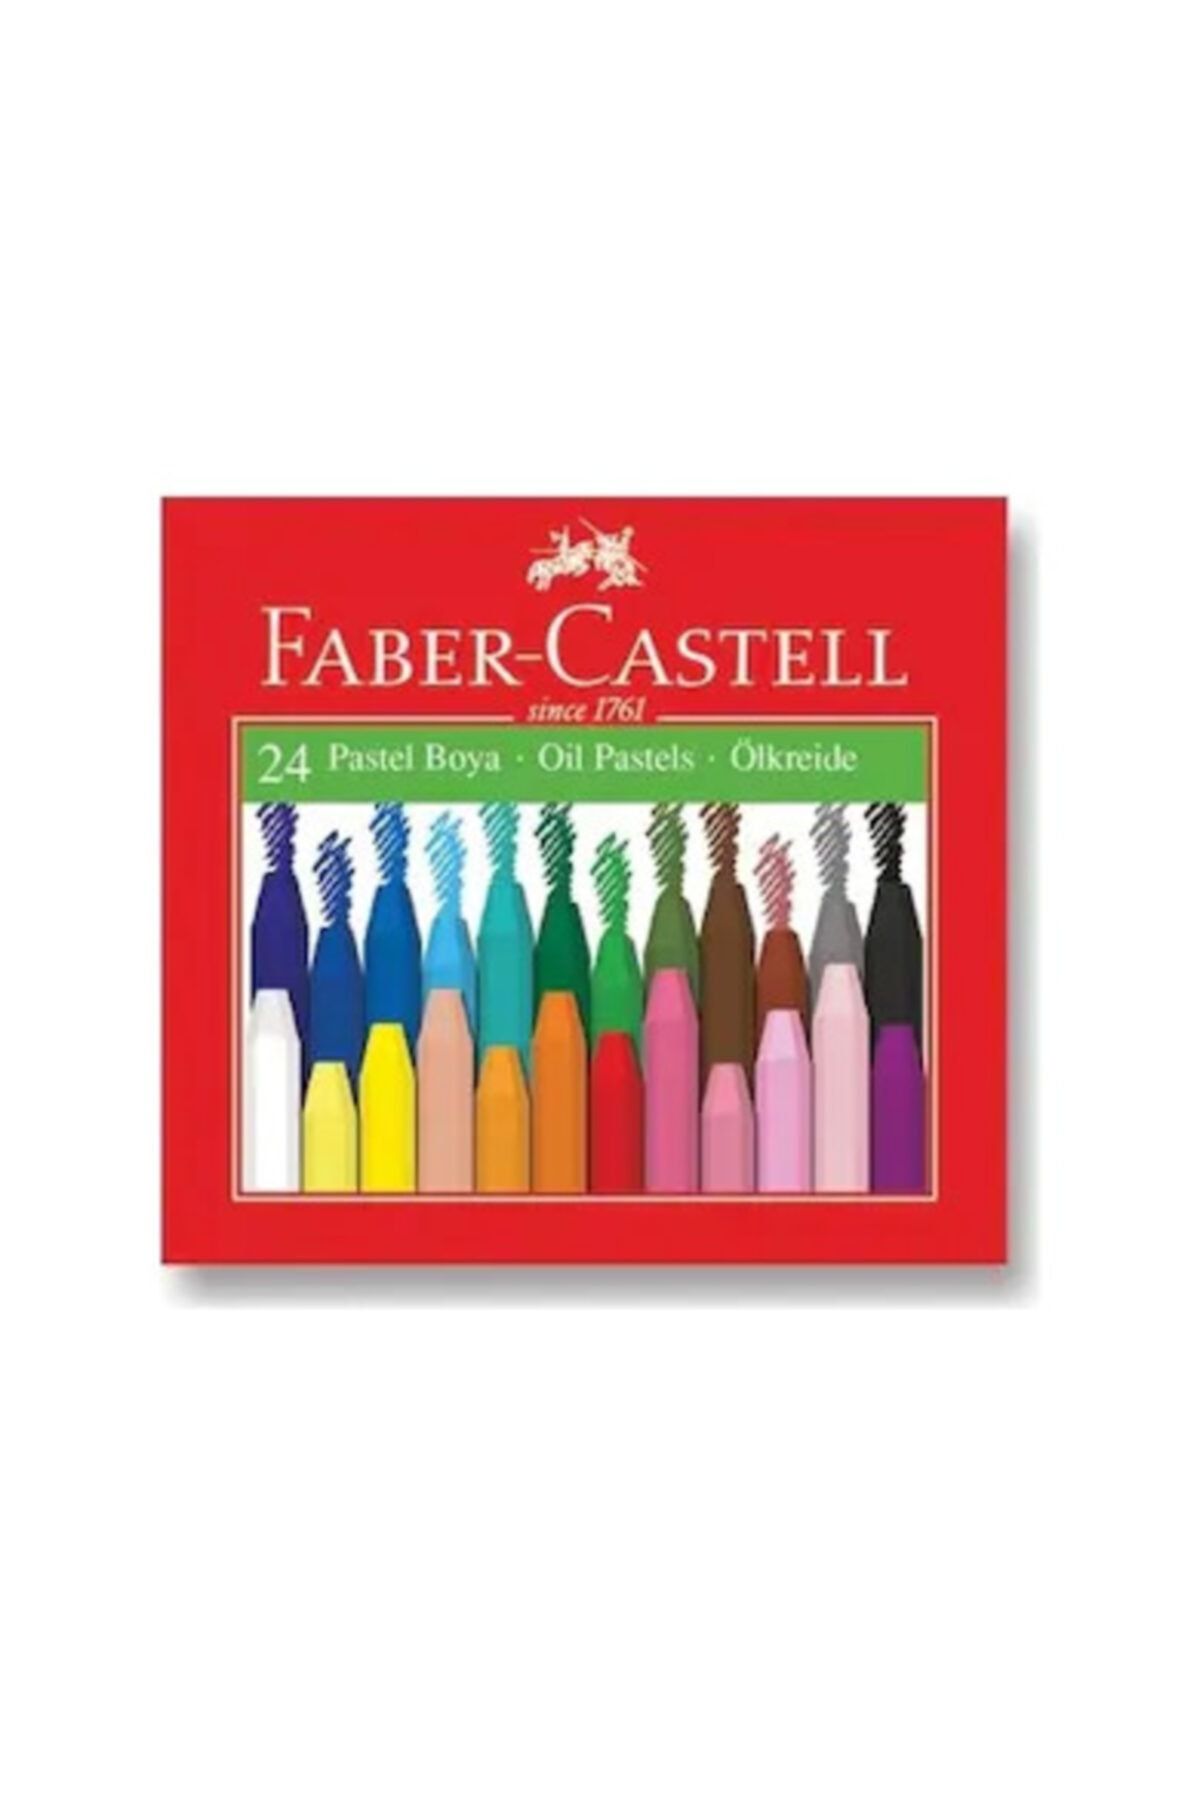 Faber Castell Pastel Boya 24 Renk Karton Kutu